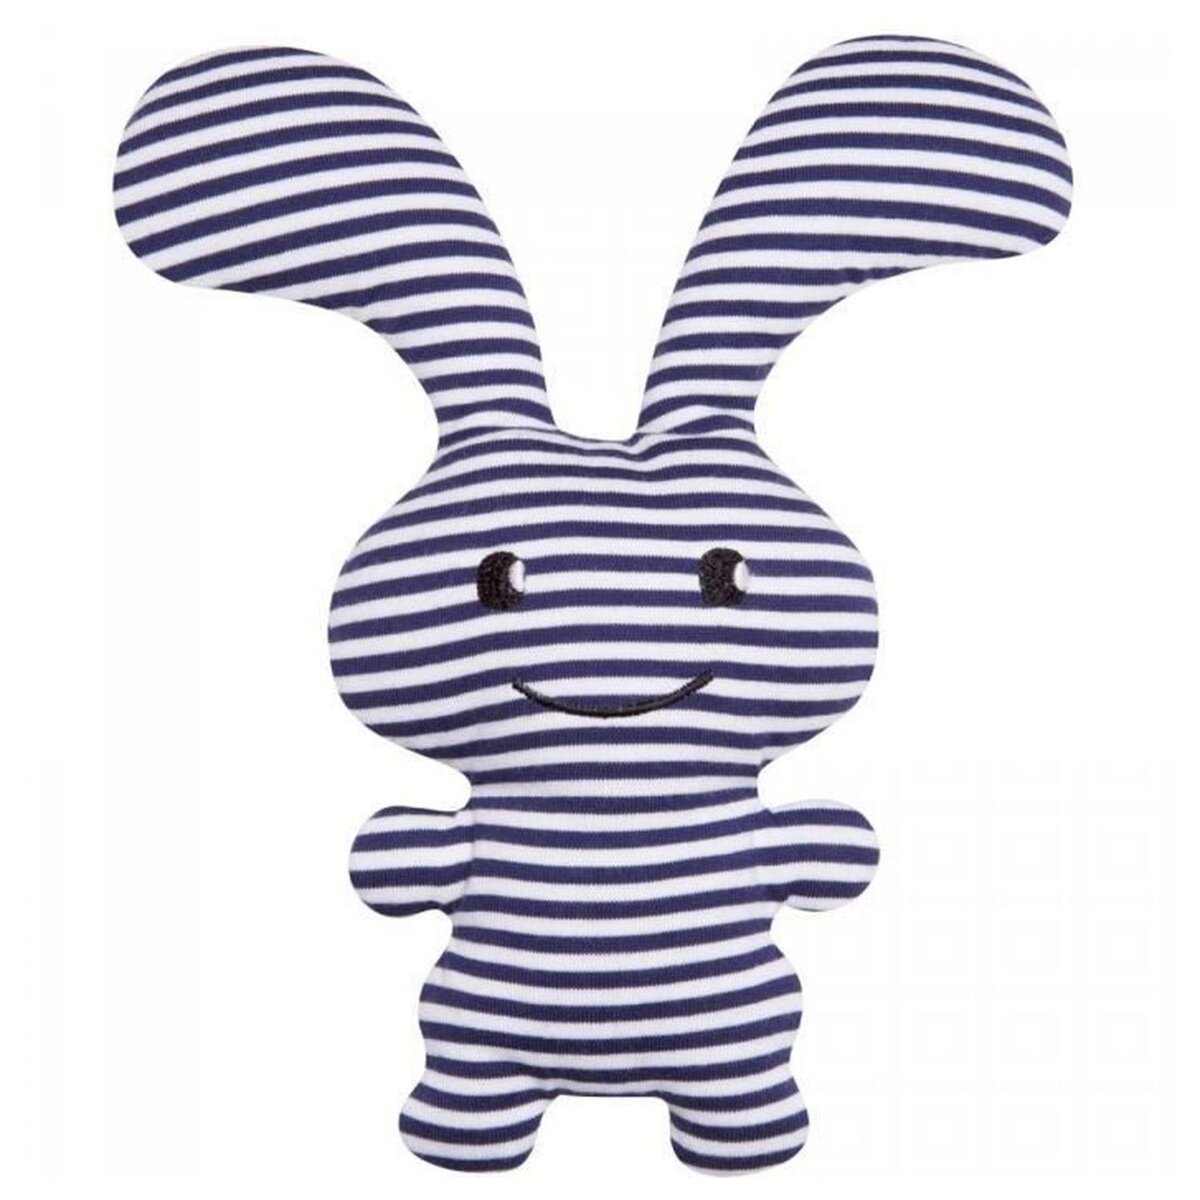 Le Trousselier Doudou Hochet -Funny Bunny  Marinière 24cm (Boîte Cadeau)